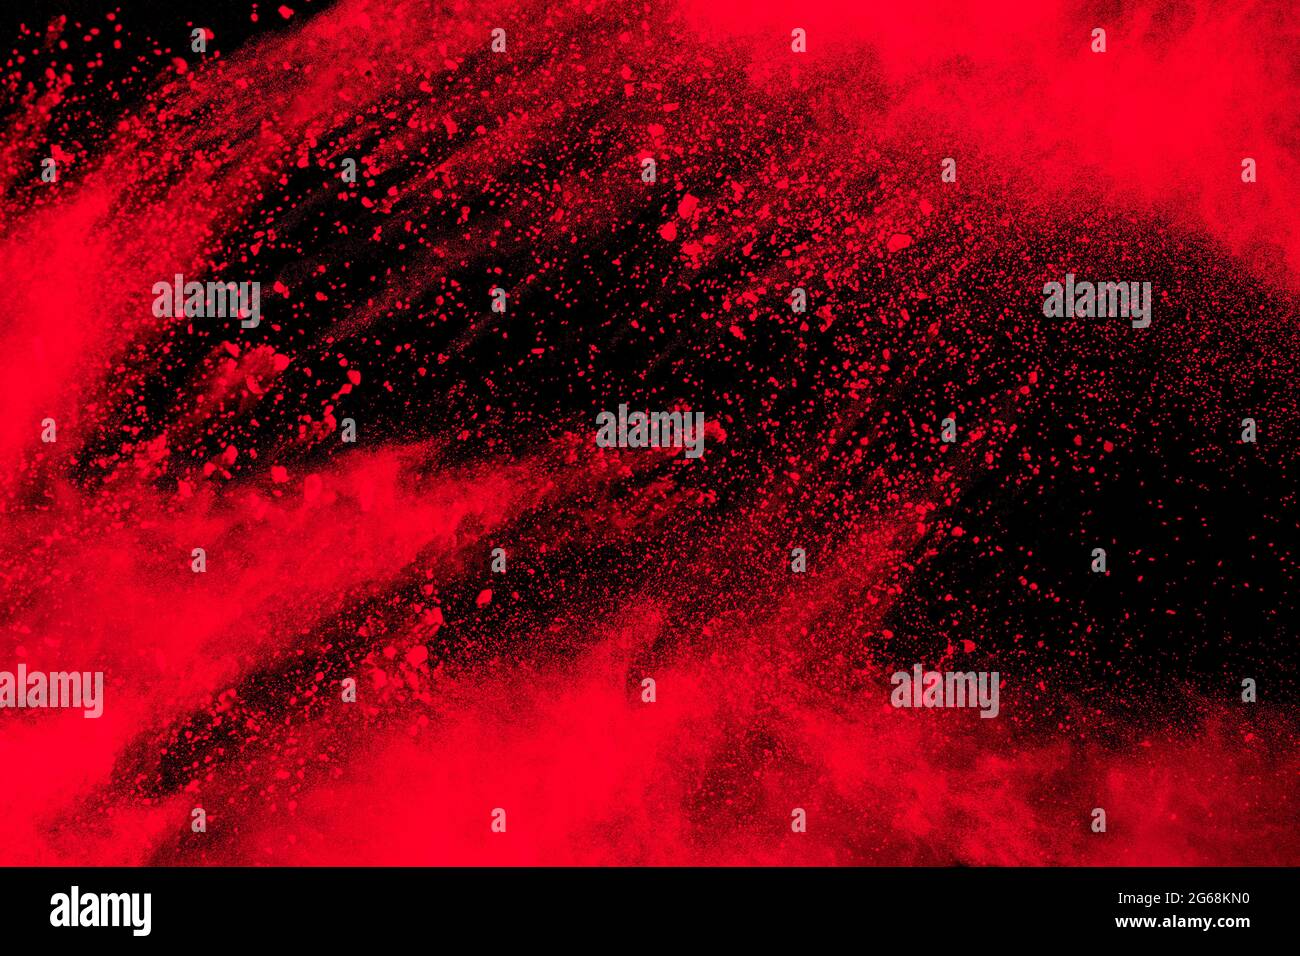 Esplosione di particelle rosse su sfondo nero.Freeze movimento di spruzzi di polvere rossa. Foto Stock